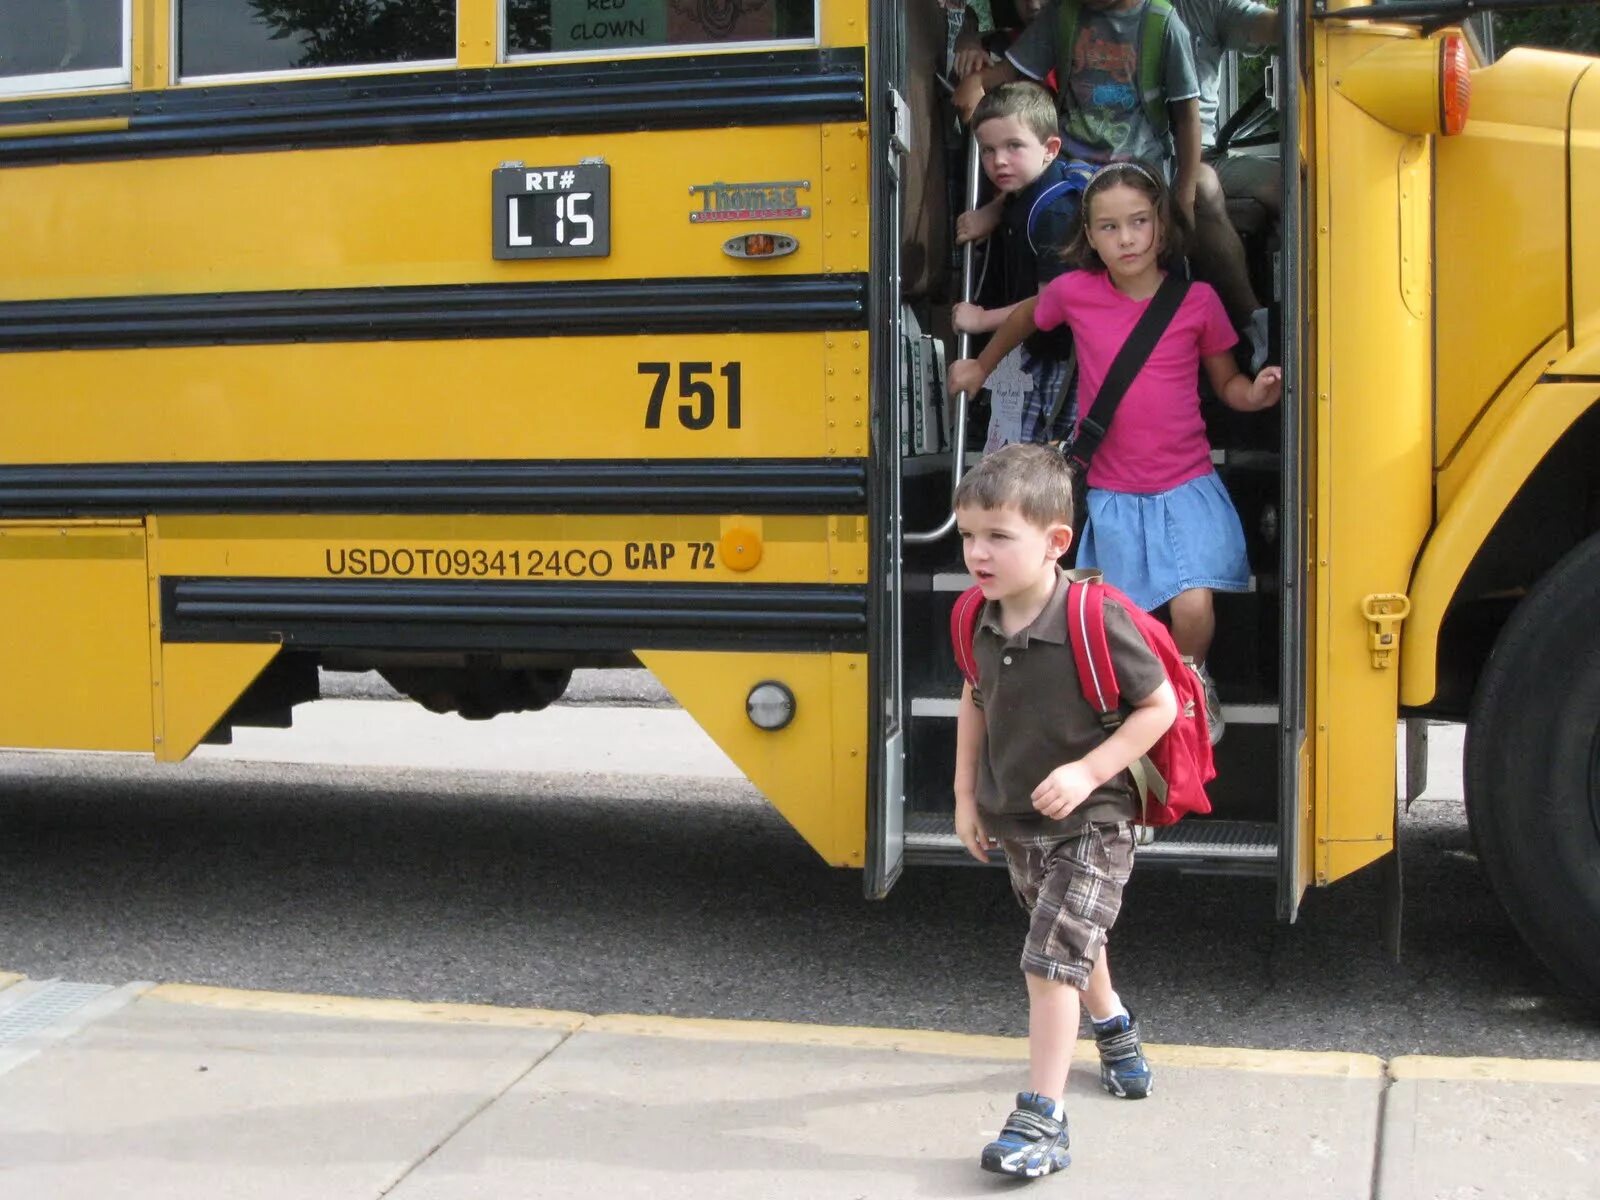 Get off the car. Выходить из автобуса. Лети выходят из автобуса. Дети виходят из автобус. Девушка выходит из автобуса.